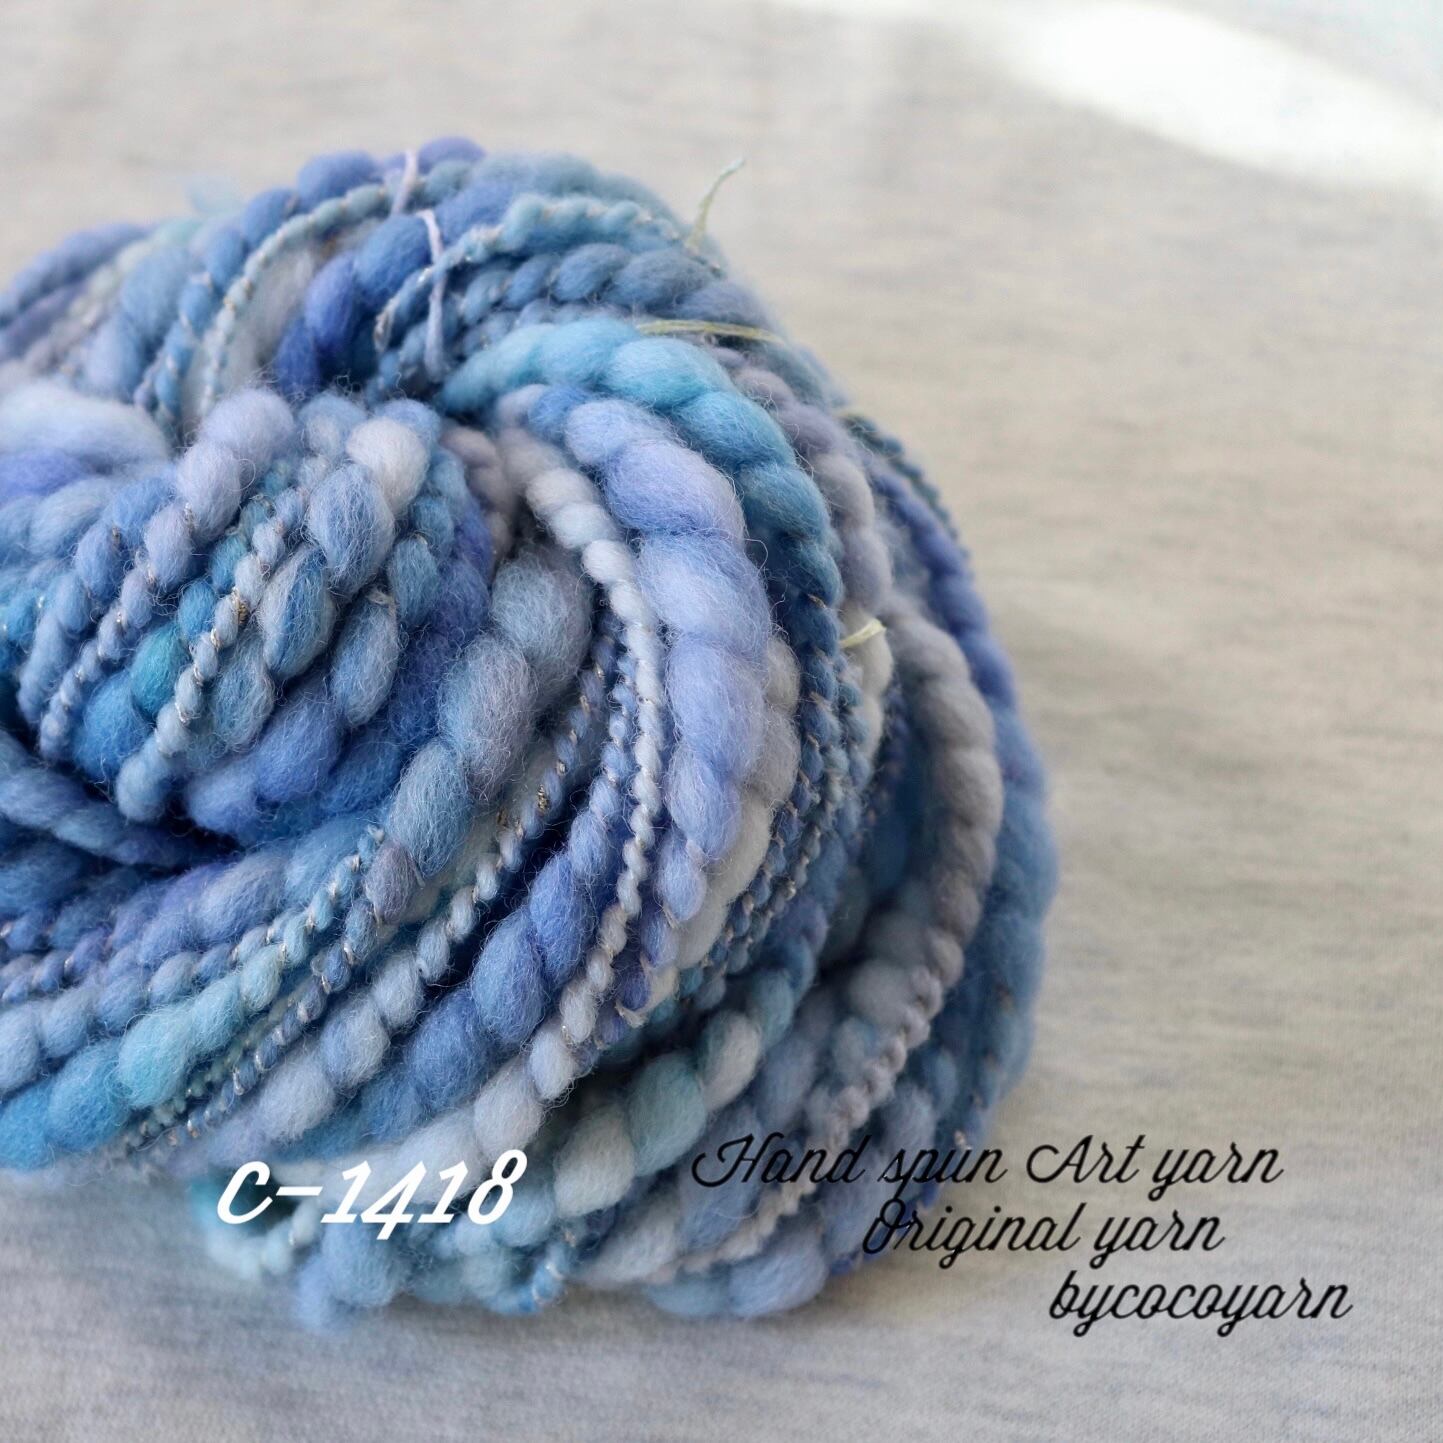 アートヤーン 手紡ぎ糸 毛糸(c-389 | miｰtoco shop/ヴィンテージビーズ 